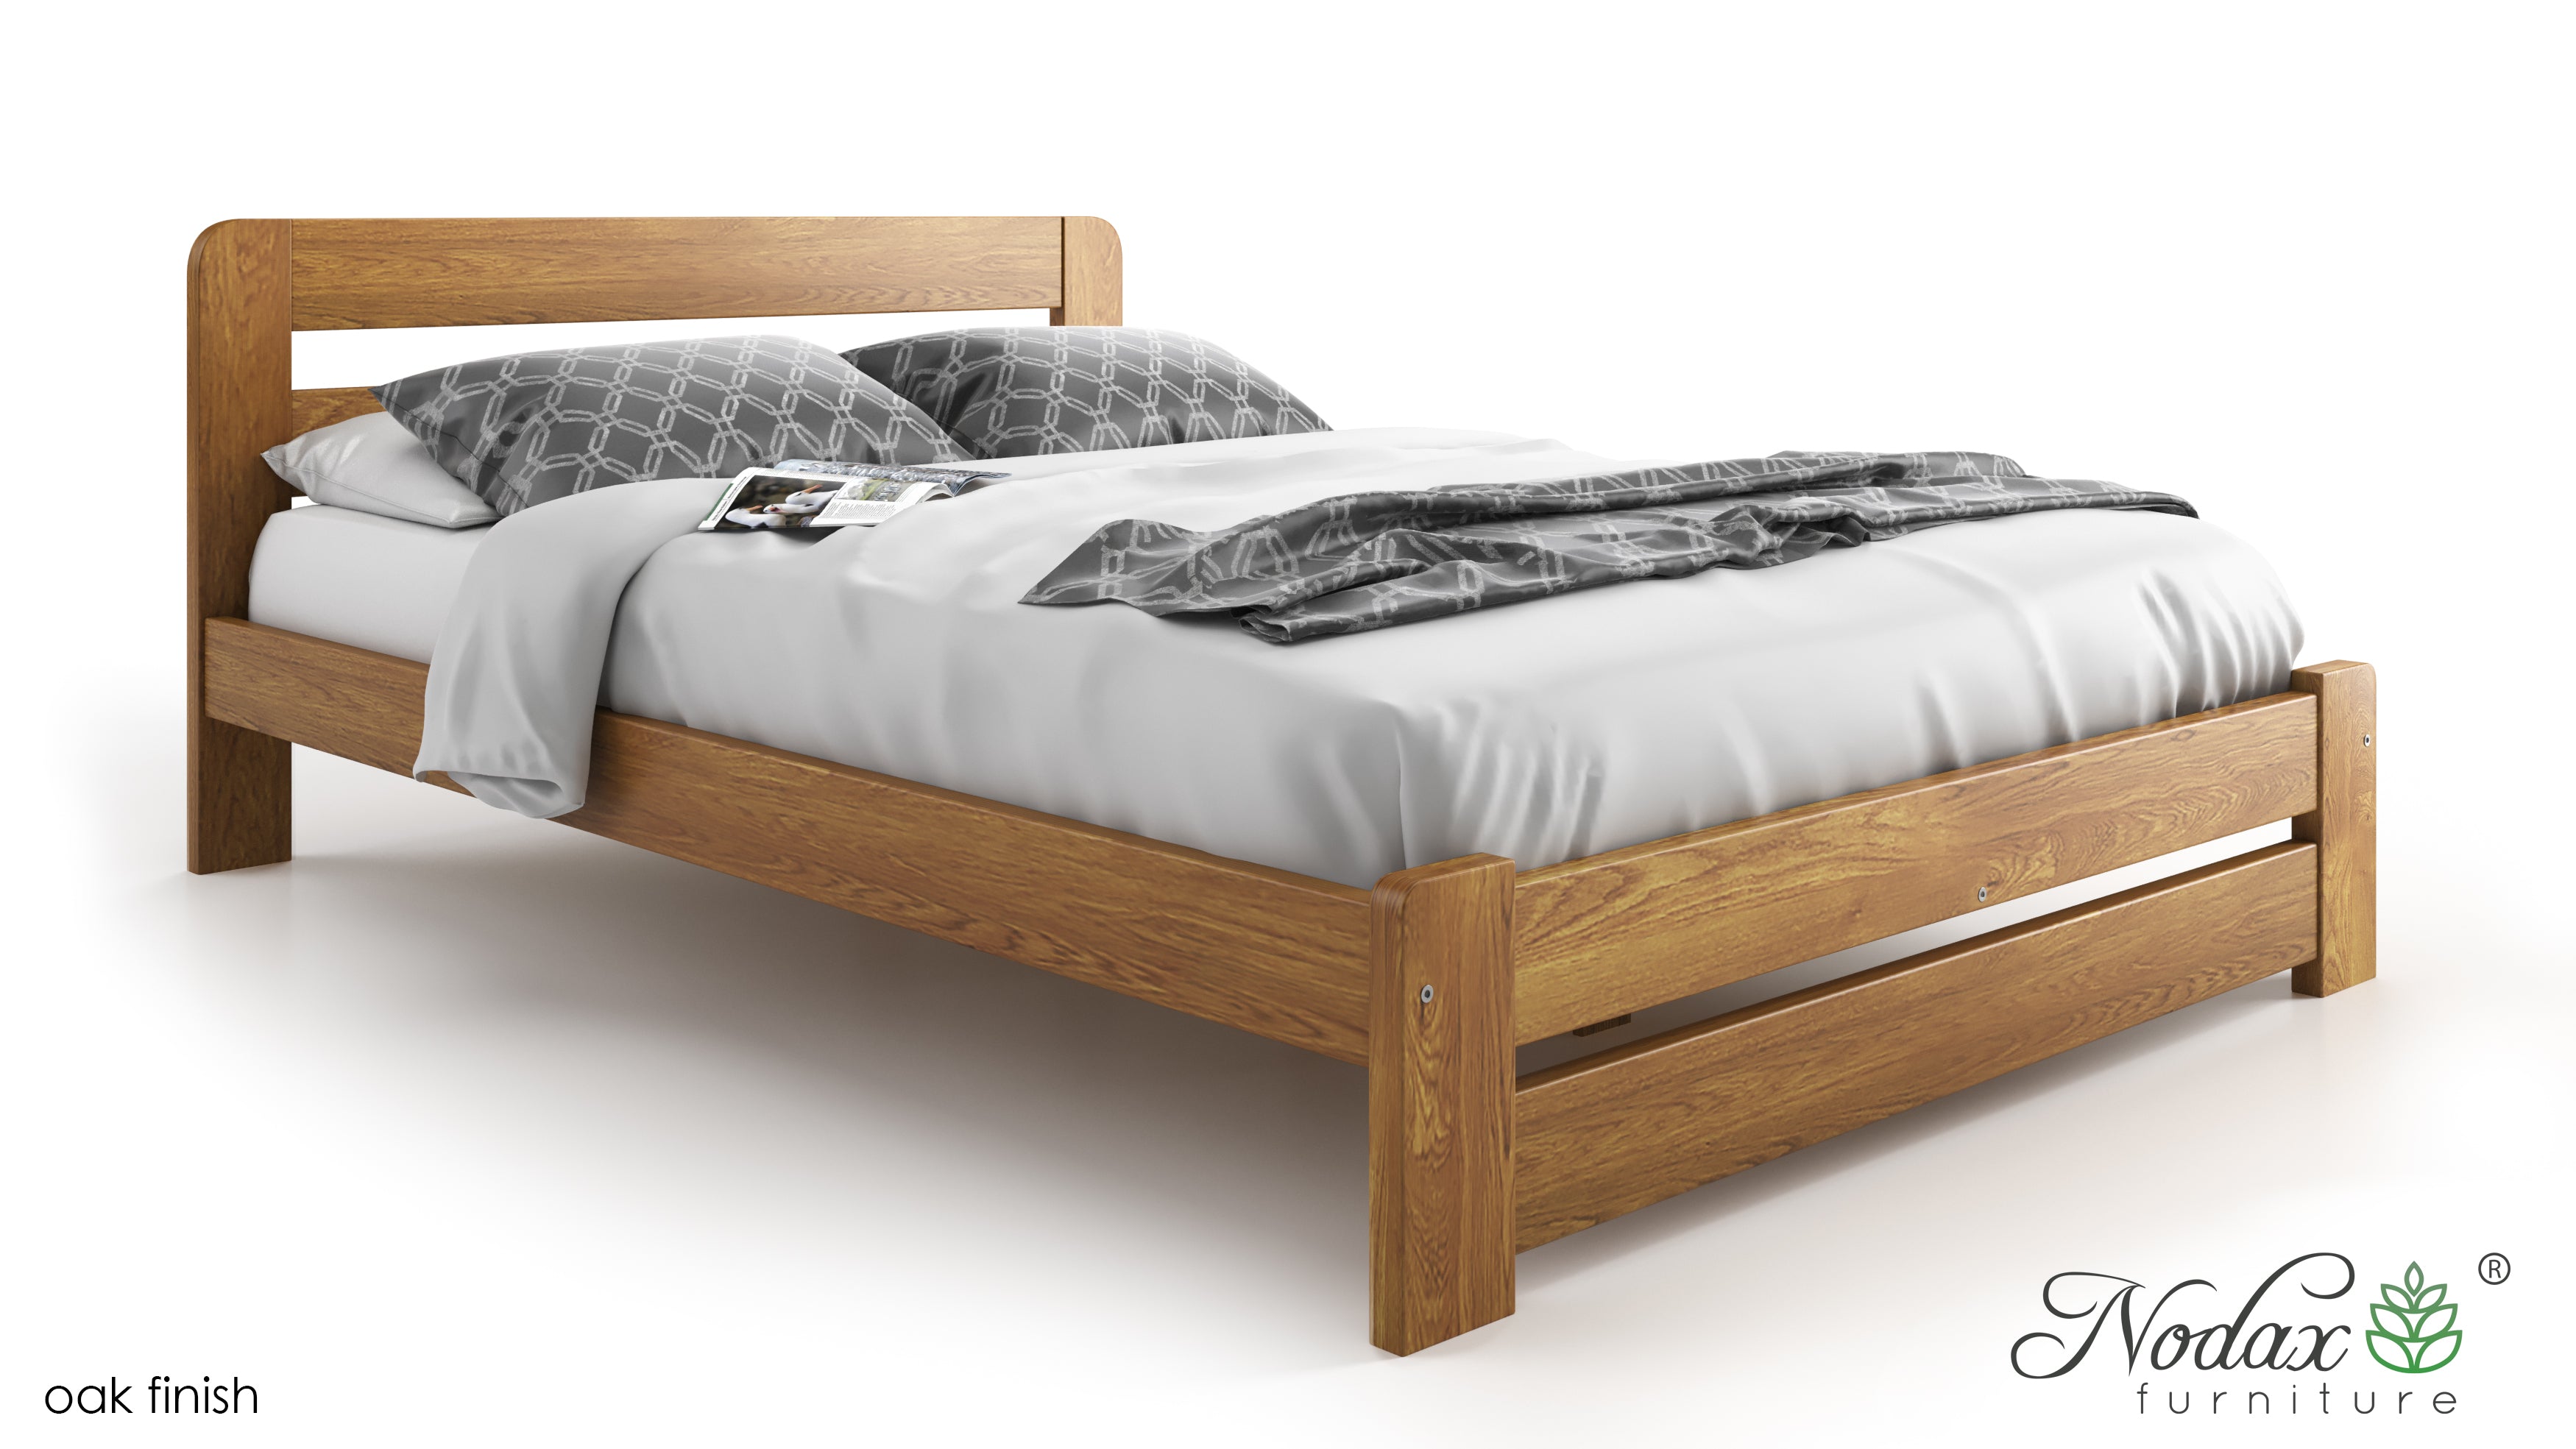 Wooden-bed-frame-Aurora-beds-online-oak